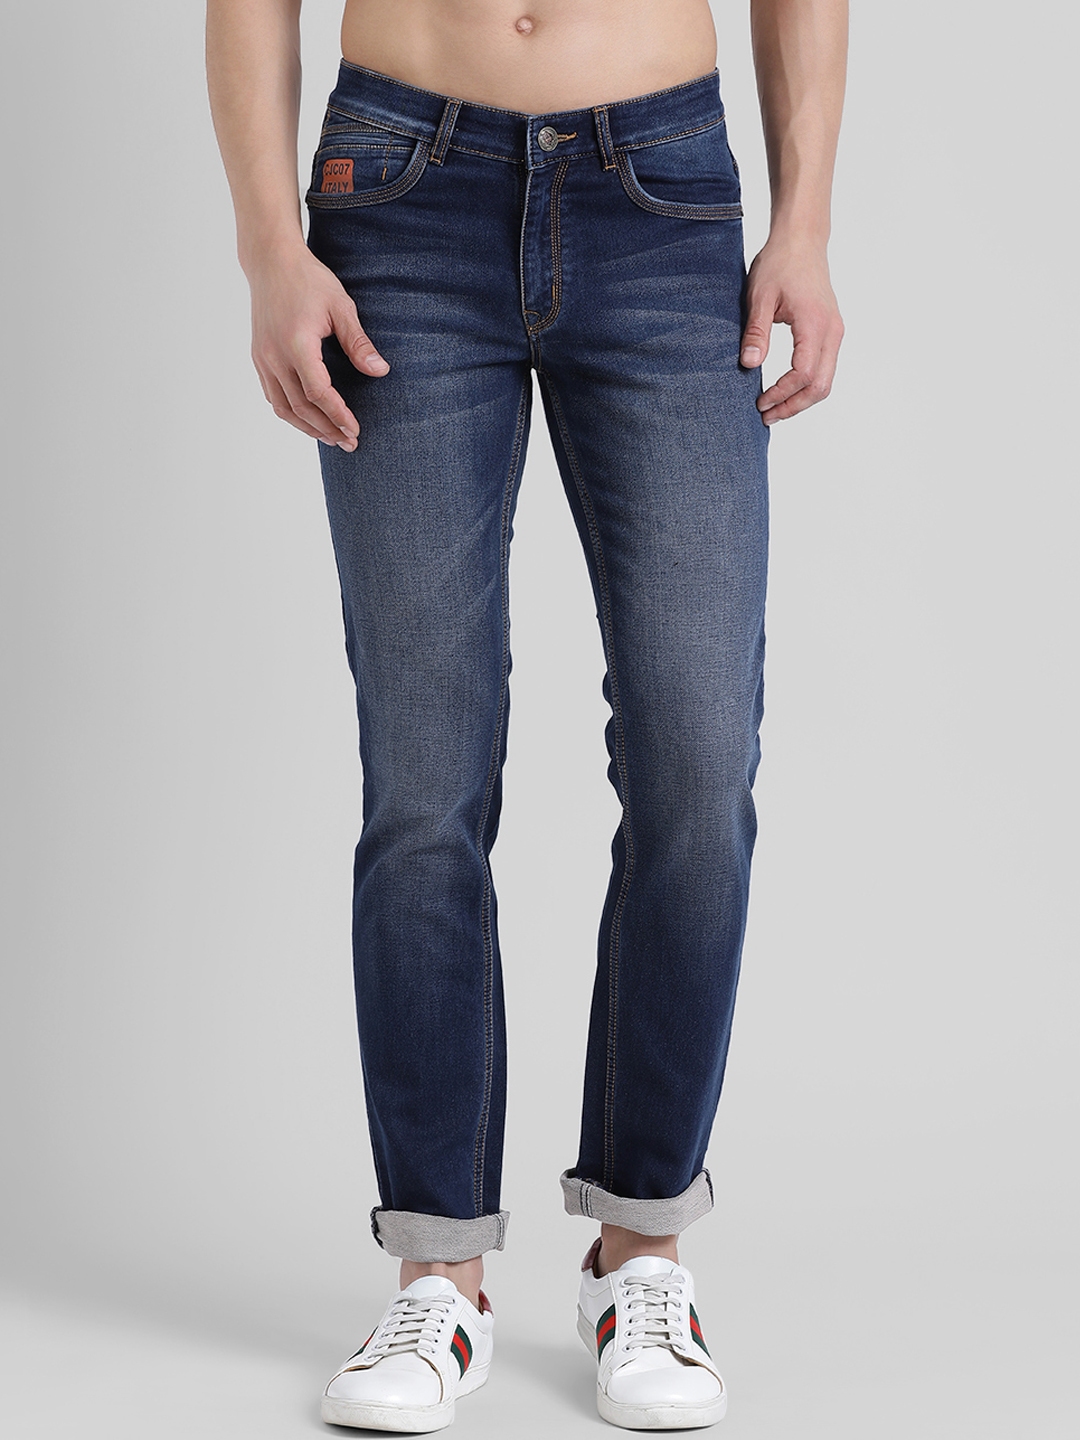 Buy COBB Men Blue Slim Fit Mid Rise Clean Look Jeans - Jeans for Men ...